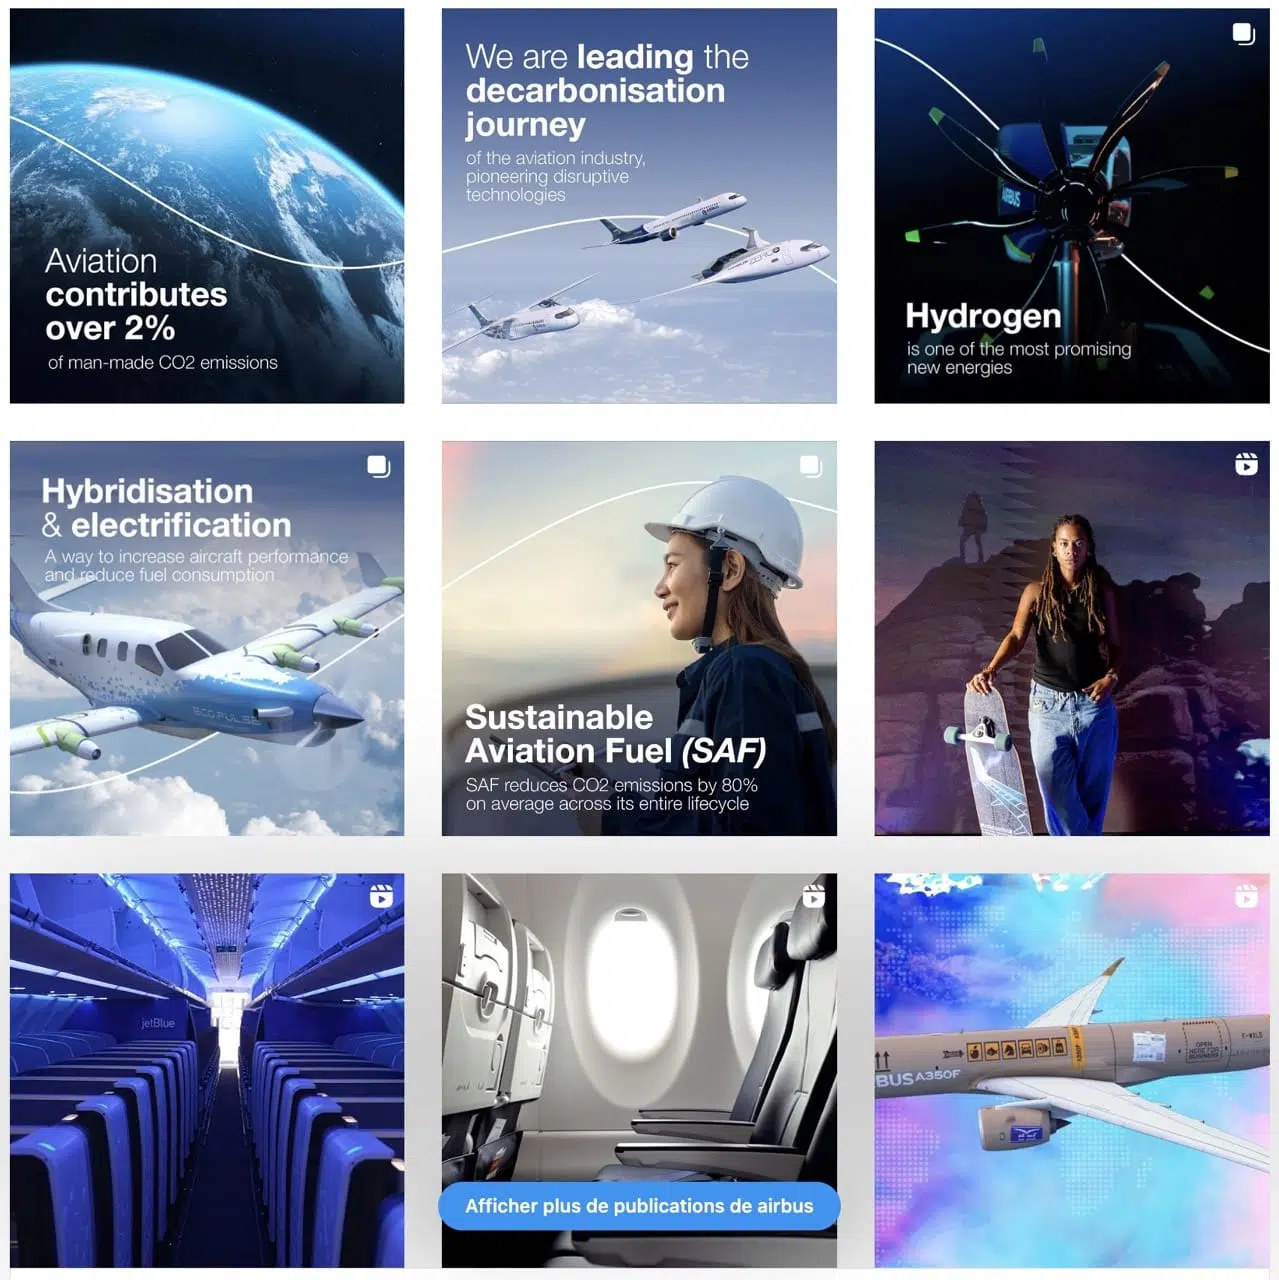 Réseaux sociaux : Le feed instagram d'Airbus